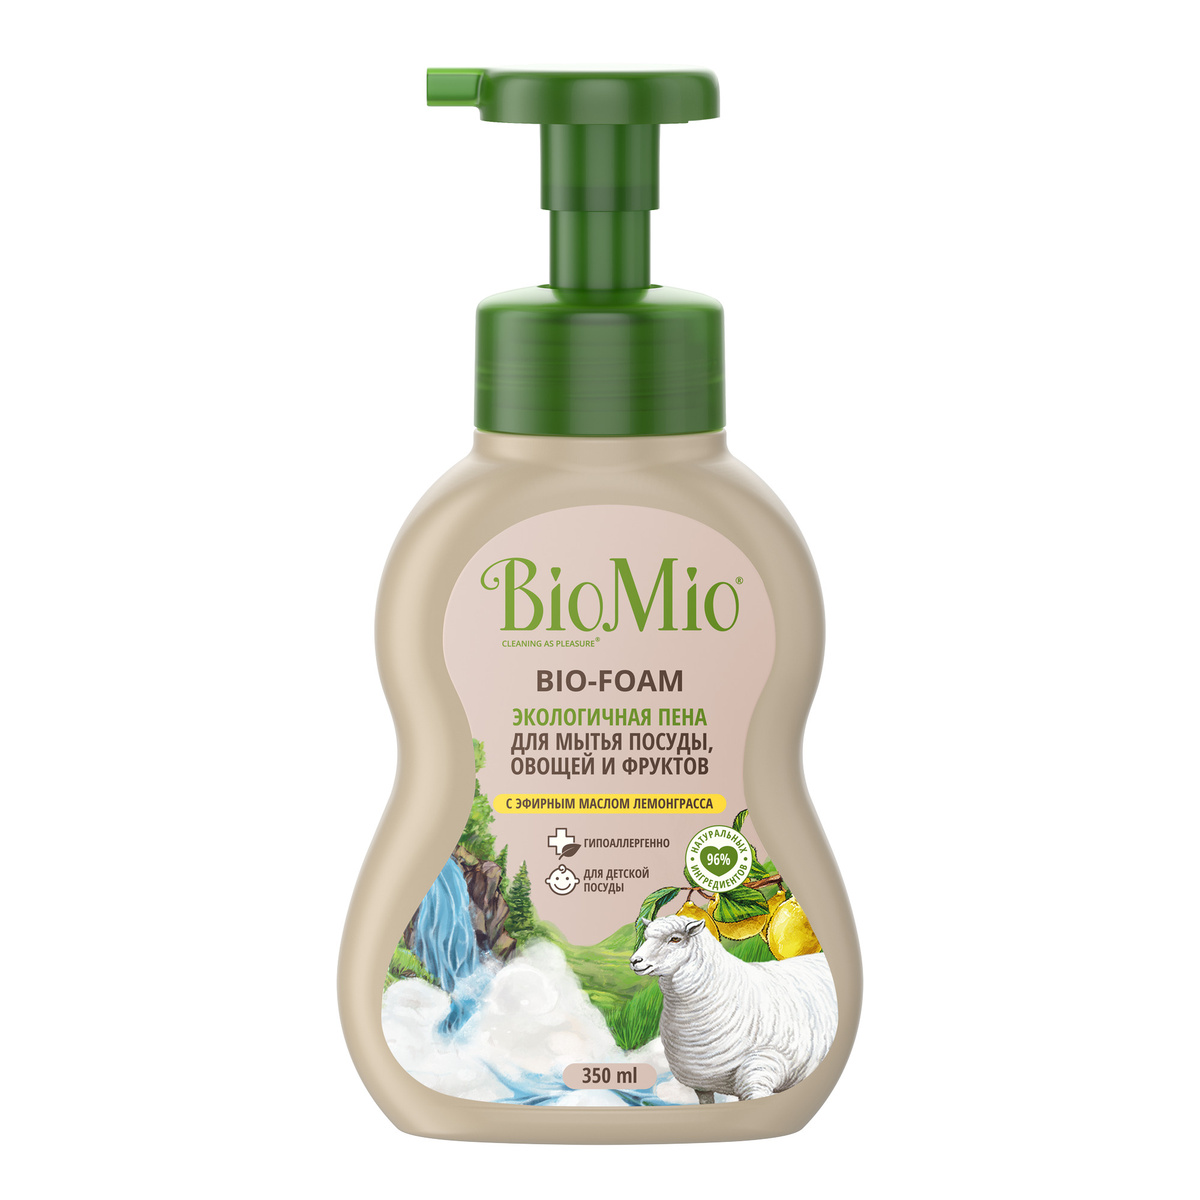 Средство для мытья посуды, овощей и фруктов BioMio BIO-FOAM экологичная пена с эфирным маслом лемонграсса фото